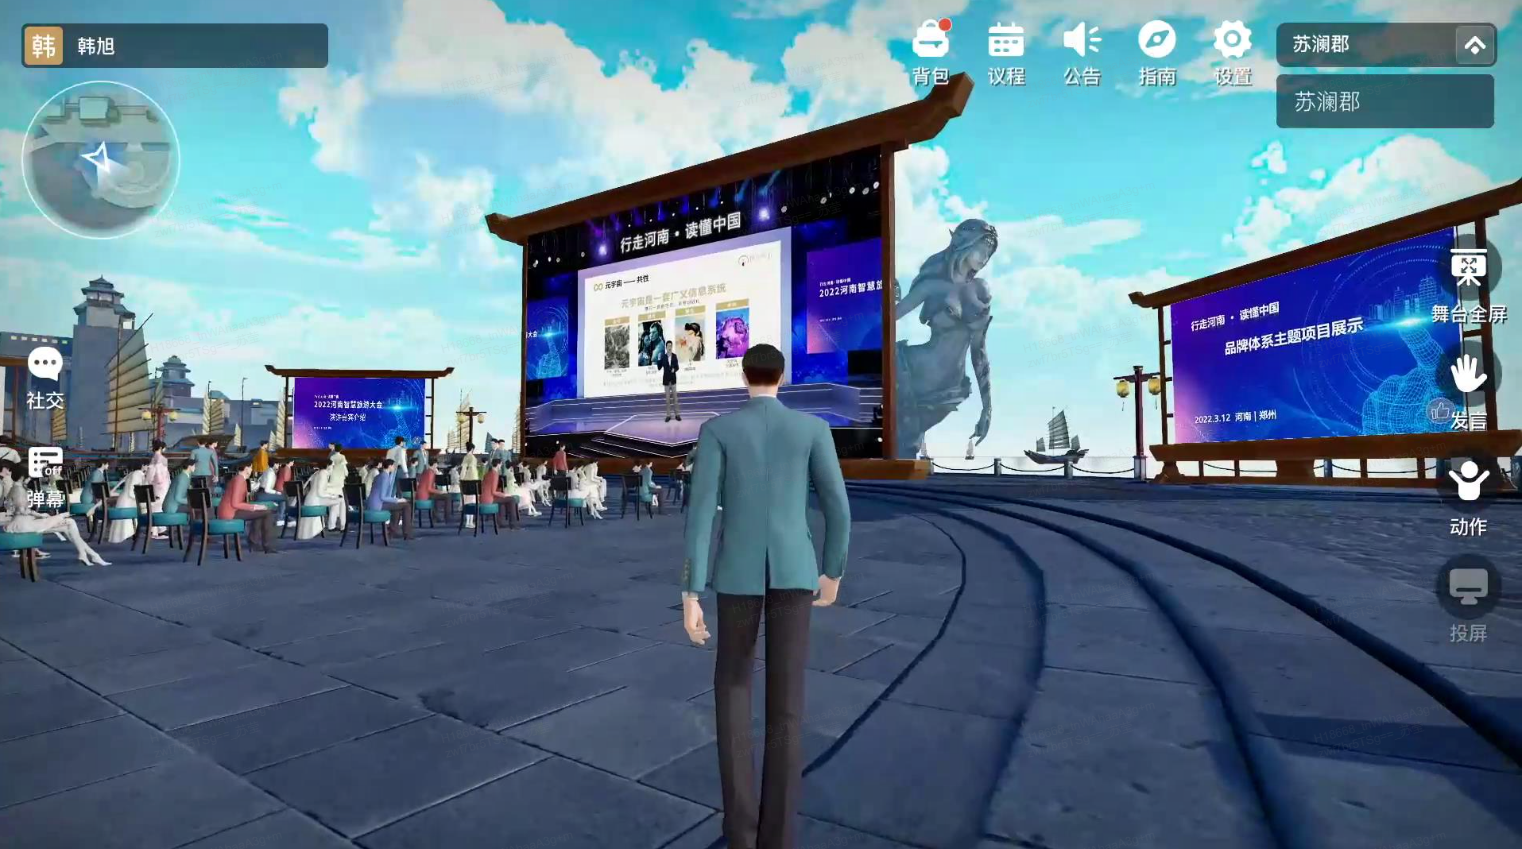 这是一张游戏截图，展示一个虚拟角色站在舞台前，观众坐在椅子上，舞台上有屏幕显示信息，周围环境模仿现实城市。